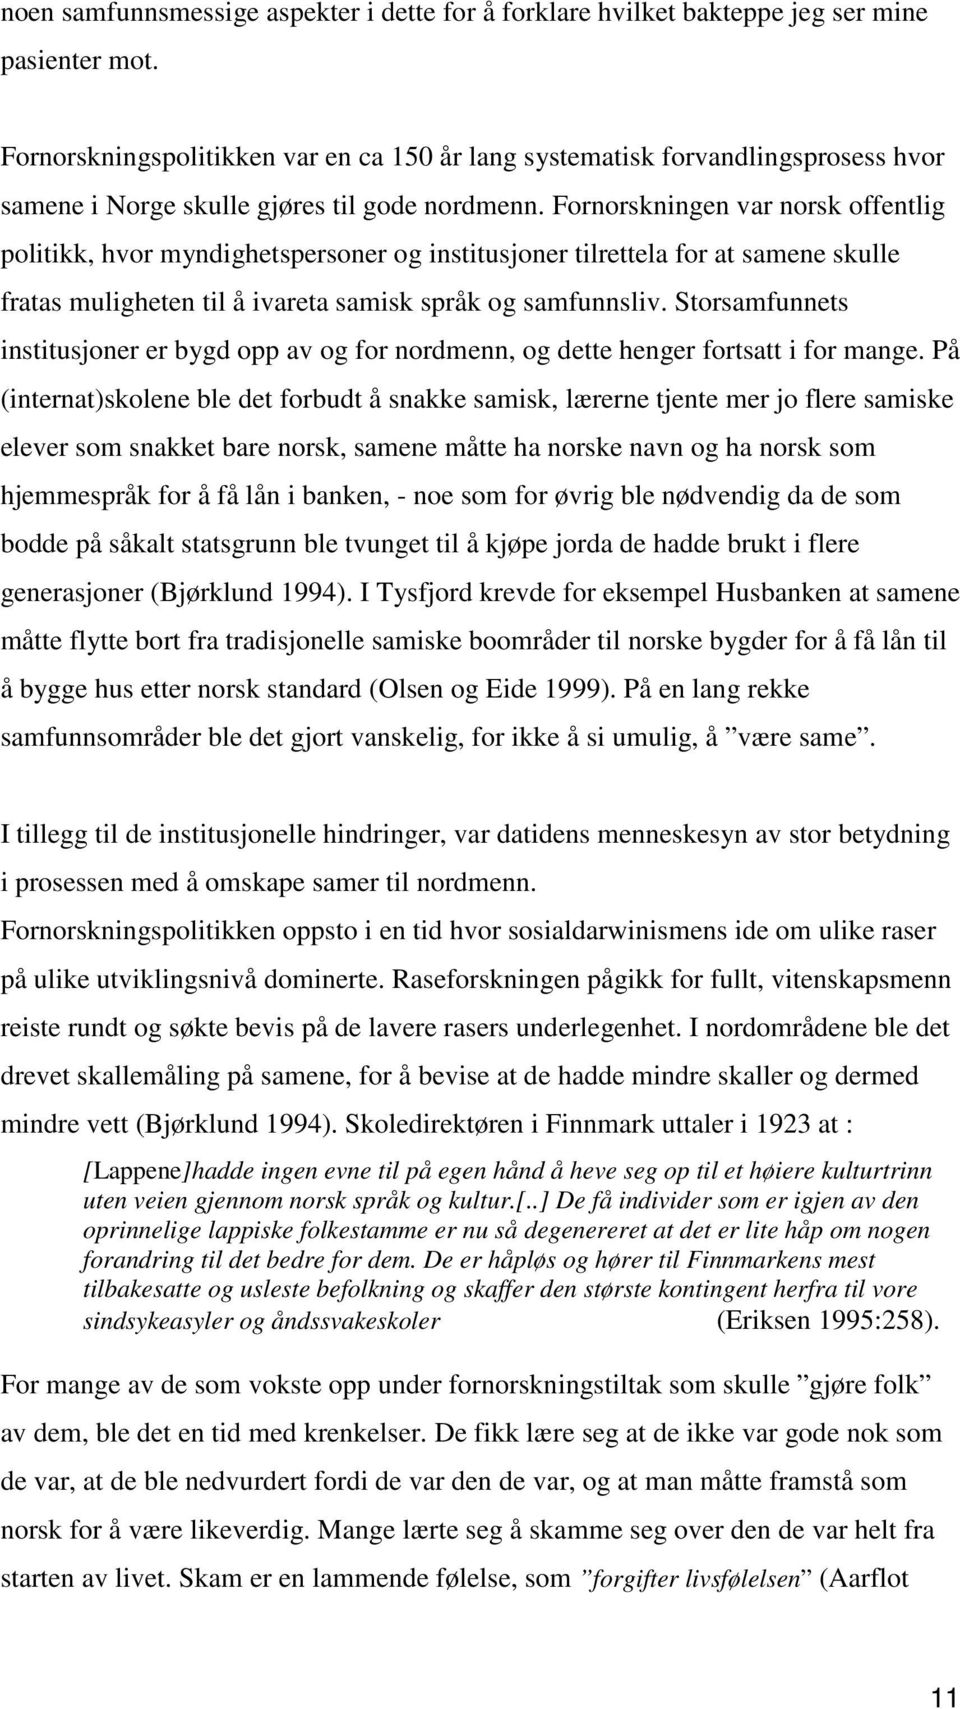 Fornorskningen var norsk offentlig politikk, hvor myndighetspersoner og institusjoner tilrettela for at samene skulle fratas muligheten til å ivareta samisk språk og samfunnsliv.